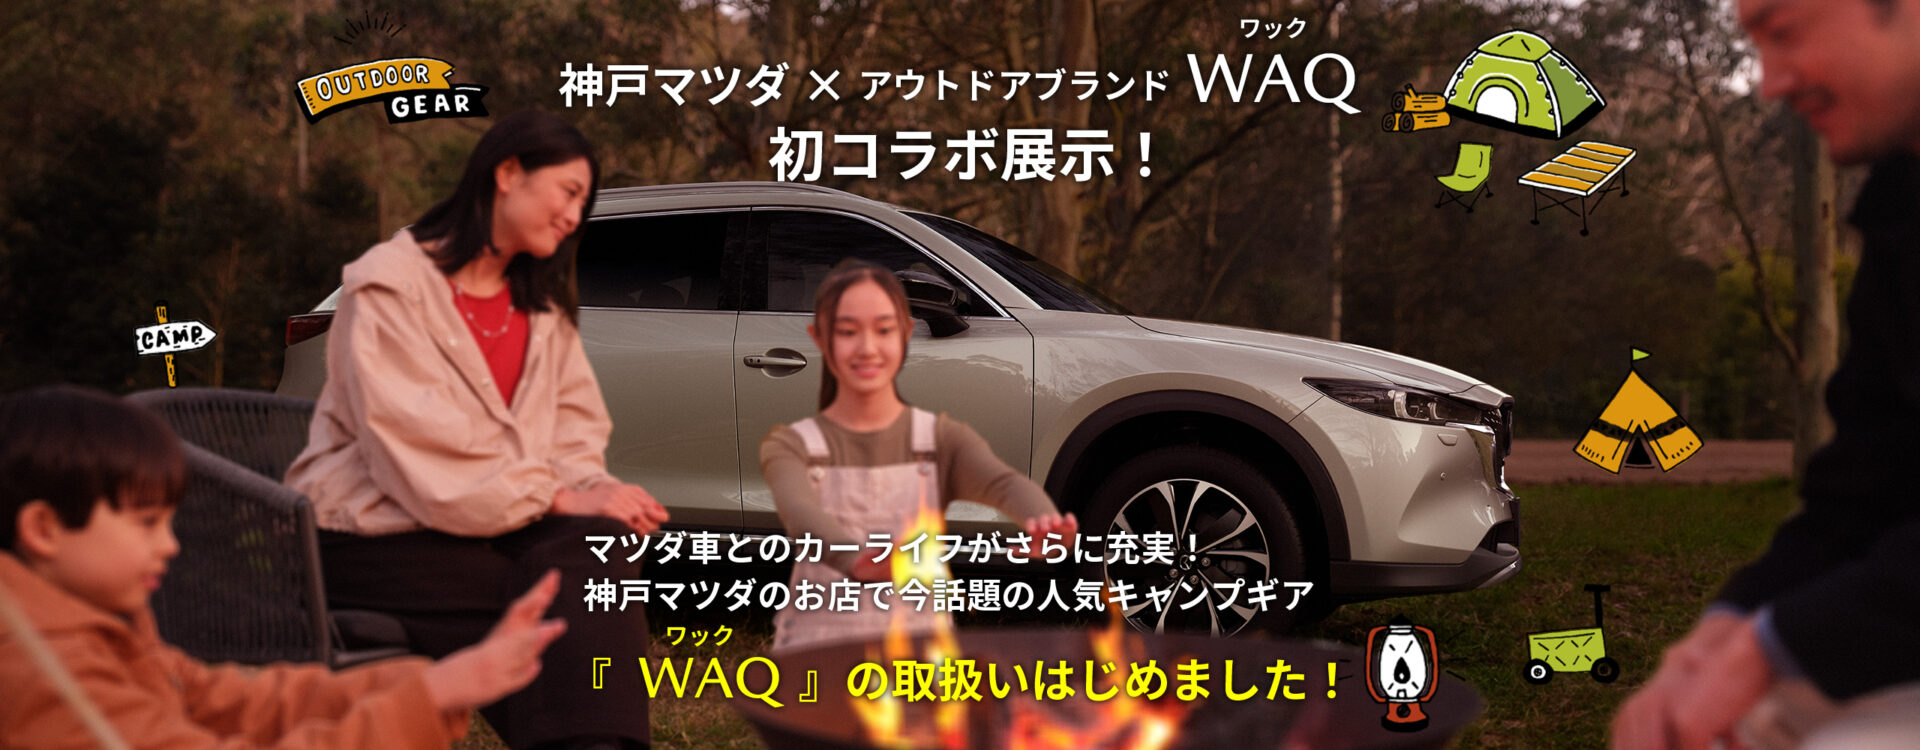 神戸マツダ×アウトドアブランドWAQ 初コラボ展示！マツダ車とのカーライフがさらに充実！神戸マツダのお店で今話題のキャンプギア『WAQ』の取扱いはじめました！